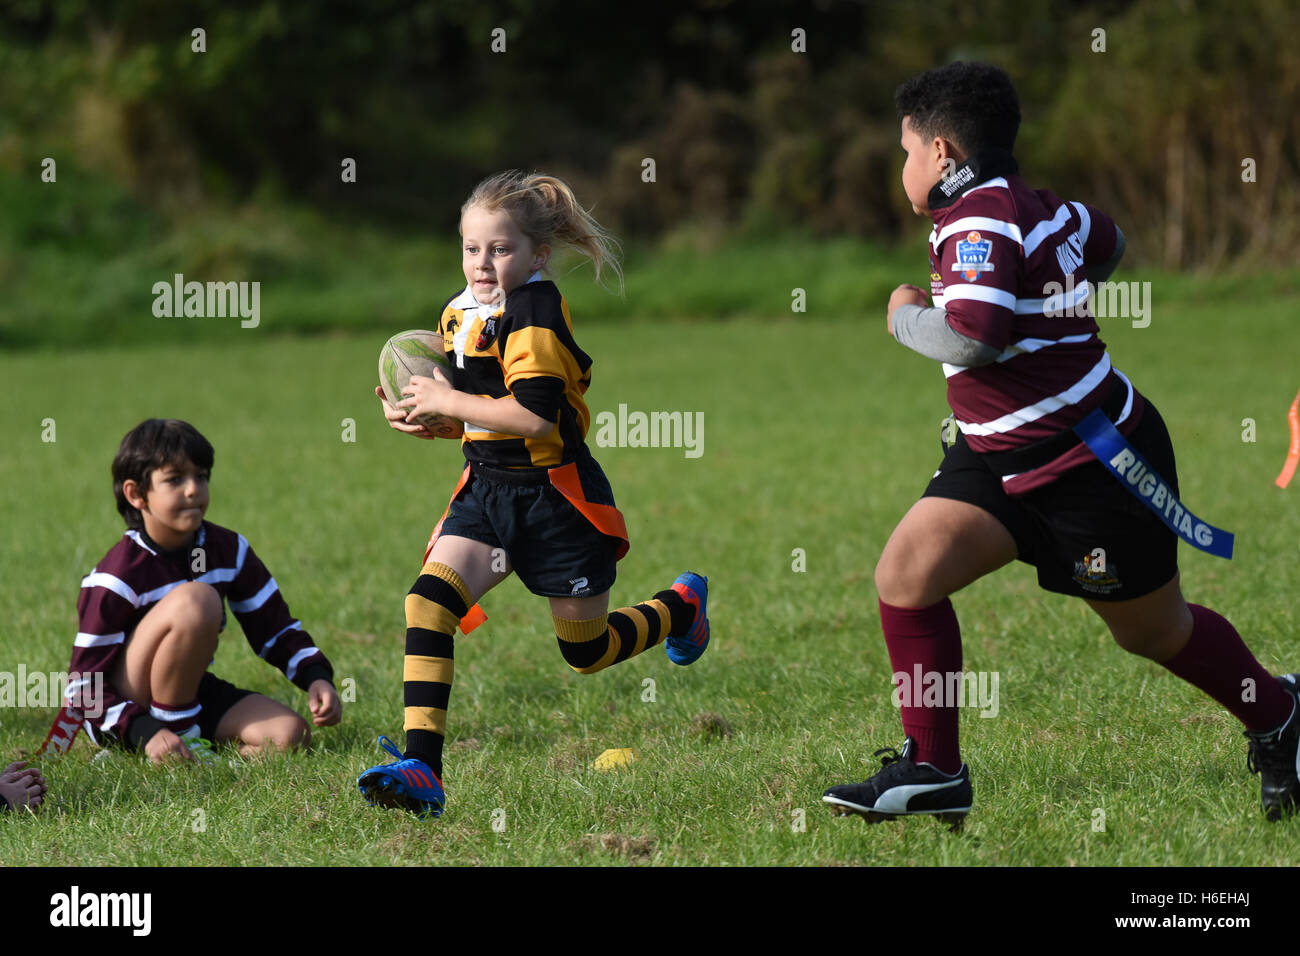 Junior tag rugby tag bambini match azione con ragazza giovane corsa Con la palla Gran Bretagna UK bambini bambini bambini sport attività sana ragazze sport ragazza Foto Stock